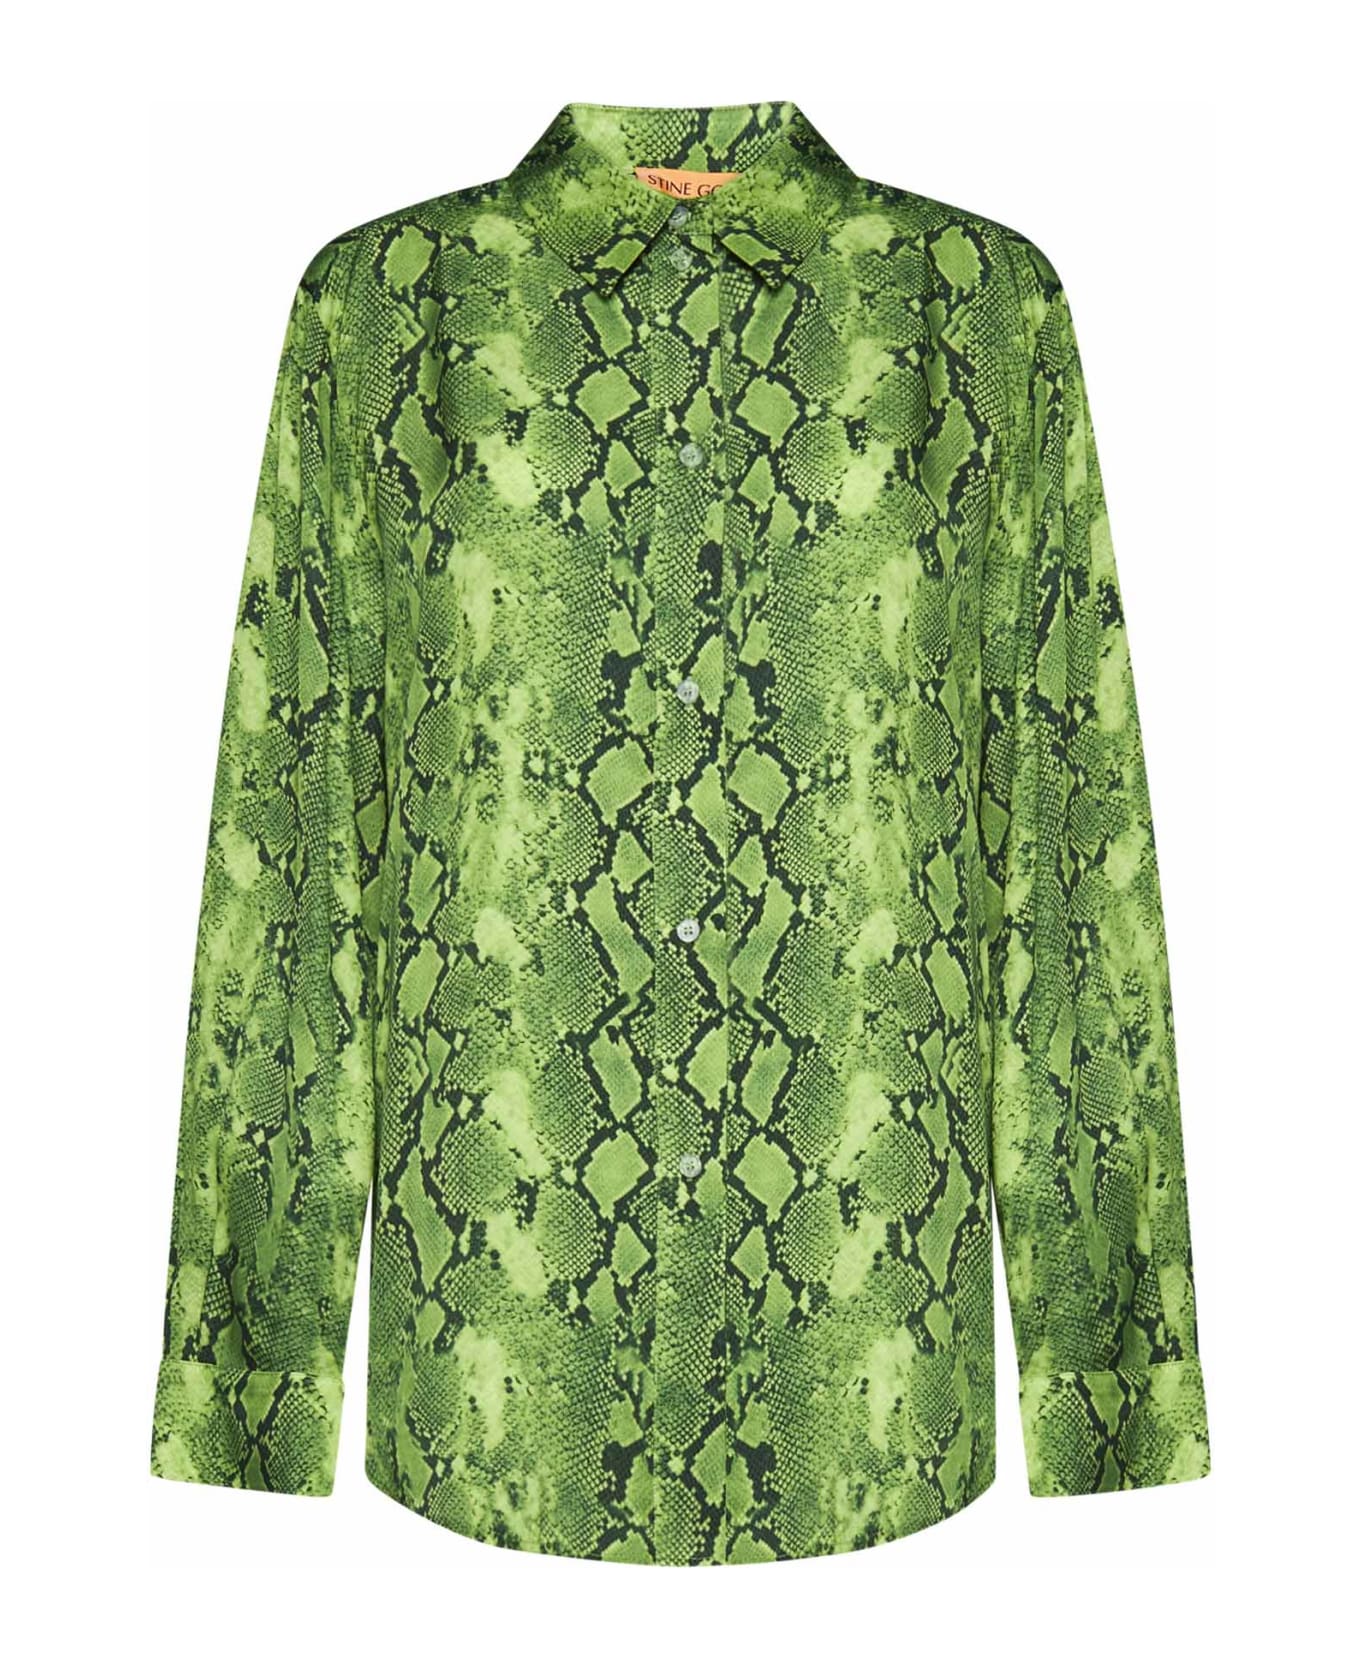 Stine Goya Shirt - Snakeskin green